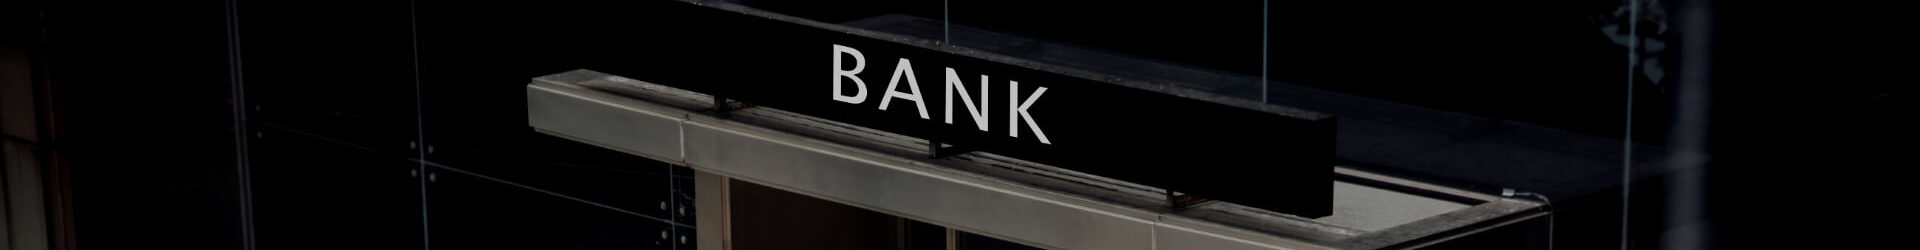 Jak banki wyliczają zdolność kredytową dla przedsiębiorców?